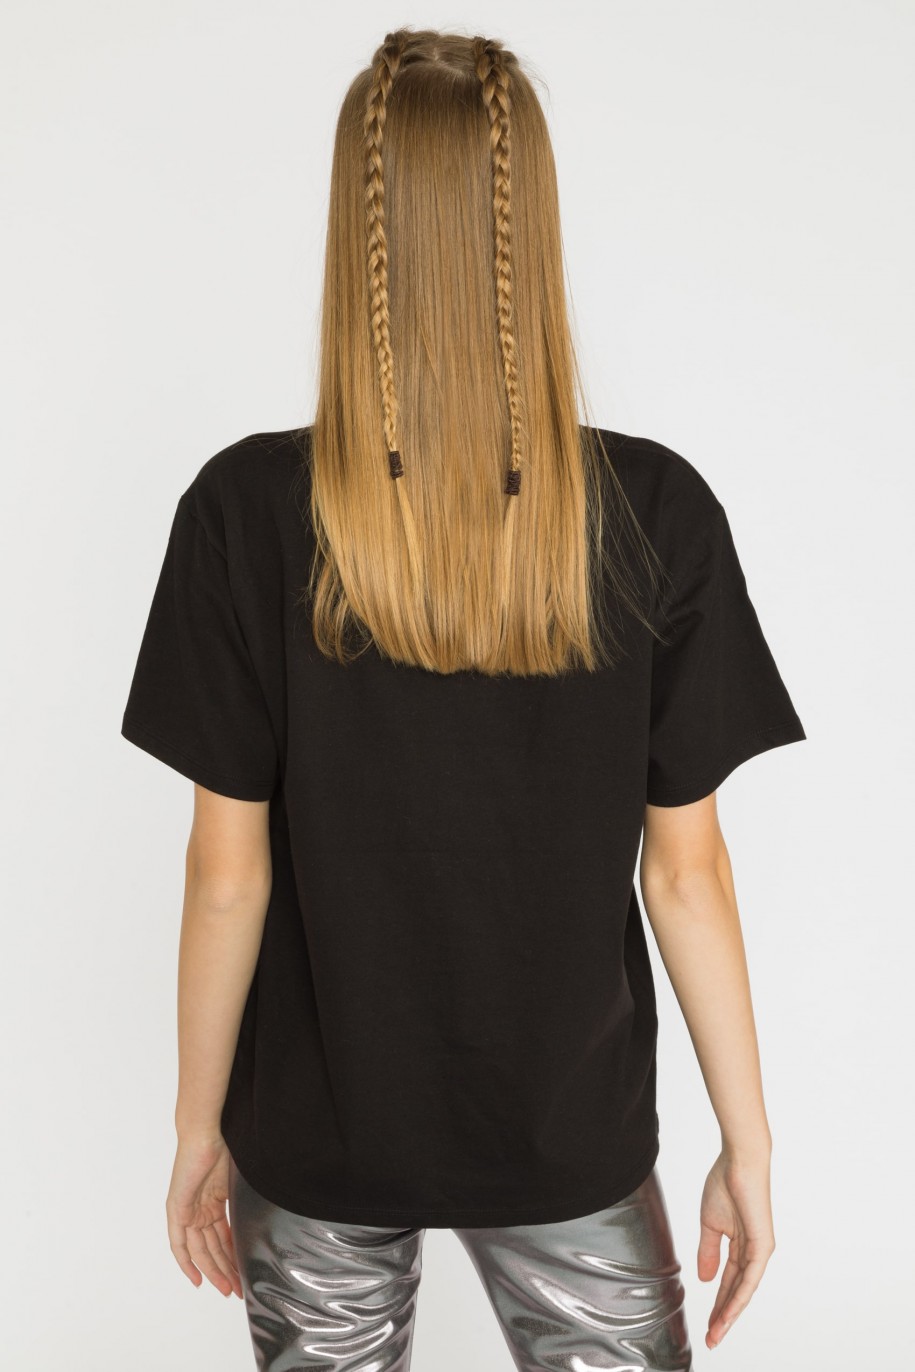 Czarny t-shirt dla dziewczyny z krótkim rękawem SKI - 45288